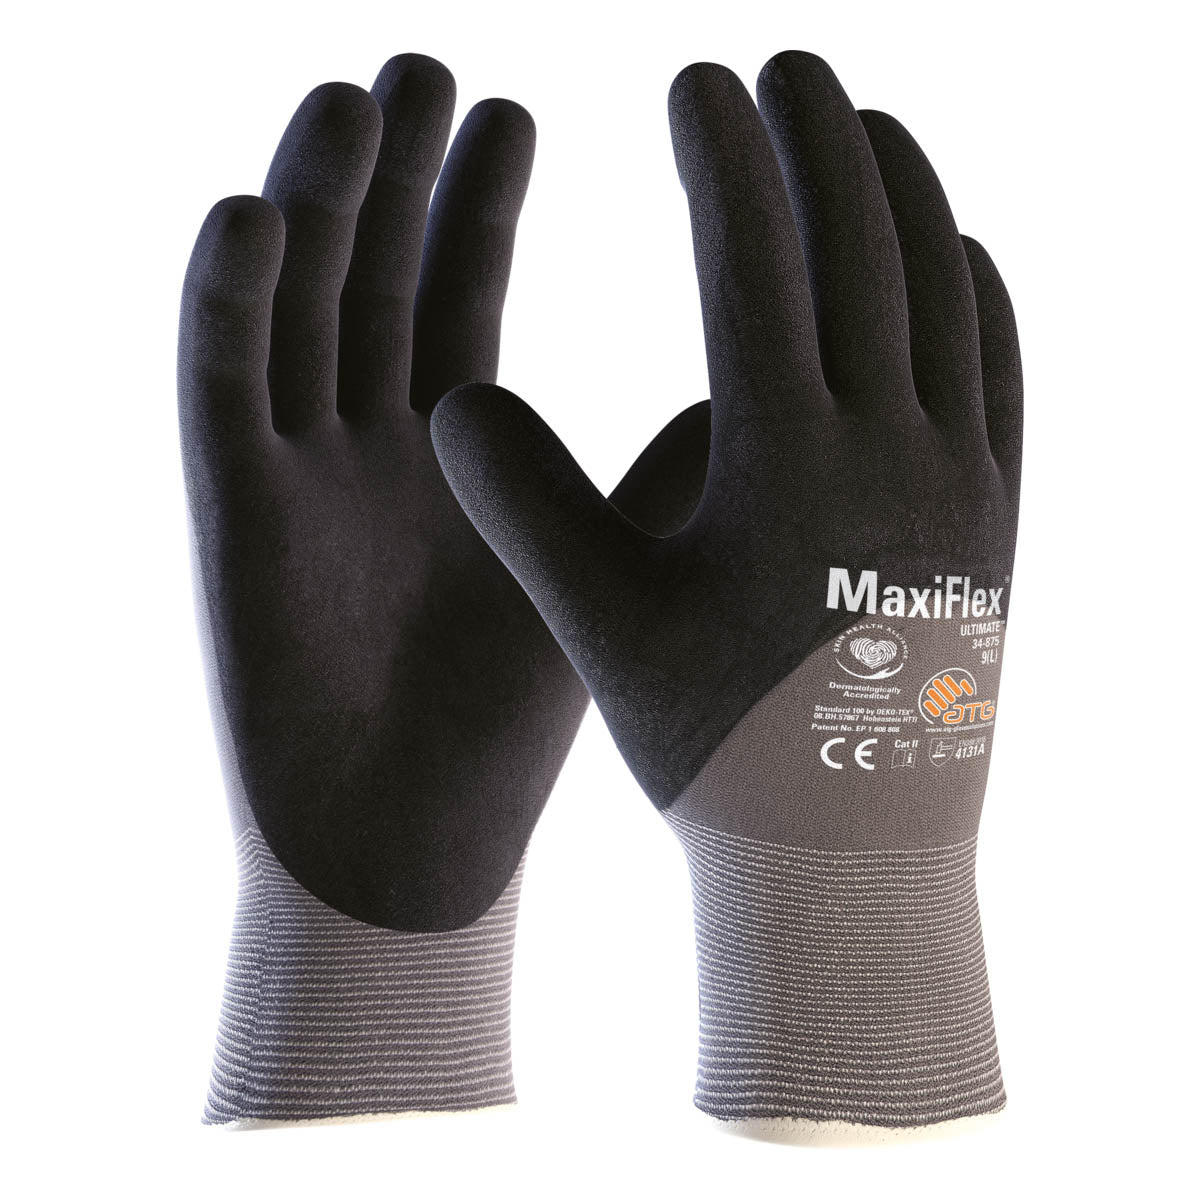 Maxiflex Ultimate, coque en nylon gris 15G, micro-mousse de nitrile noire 3/4